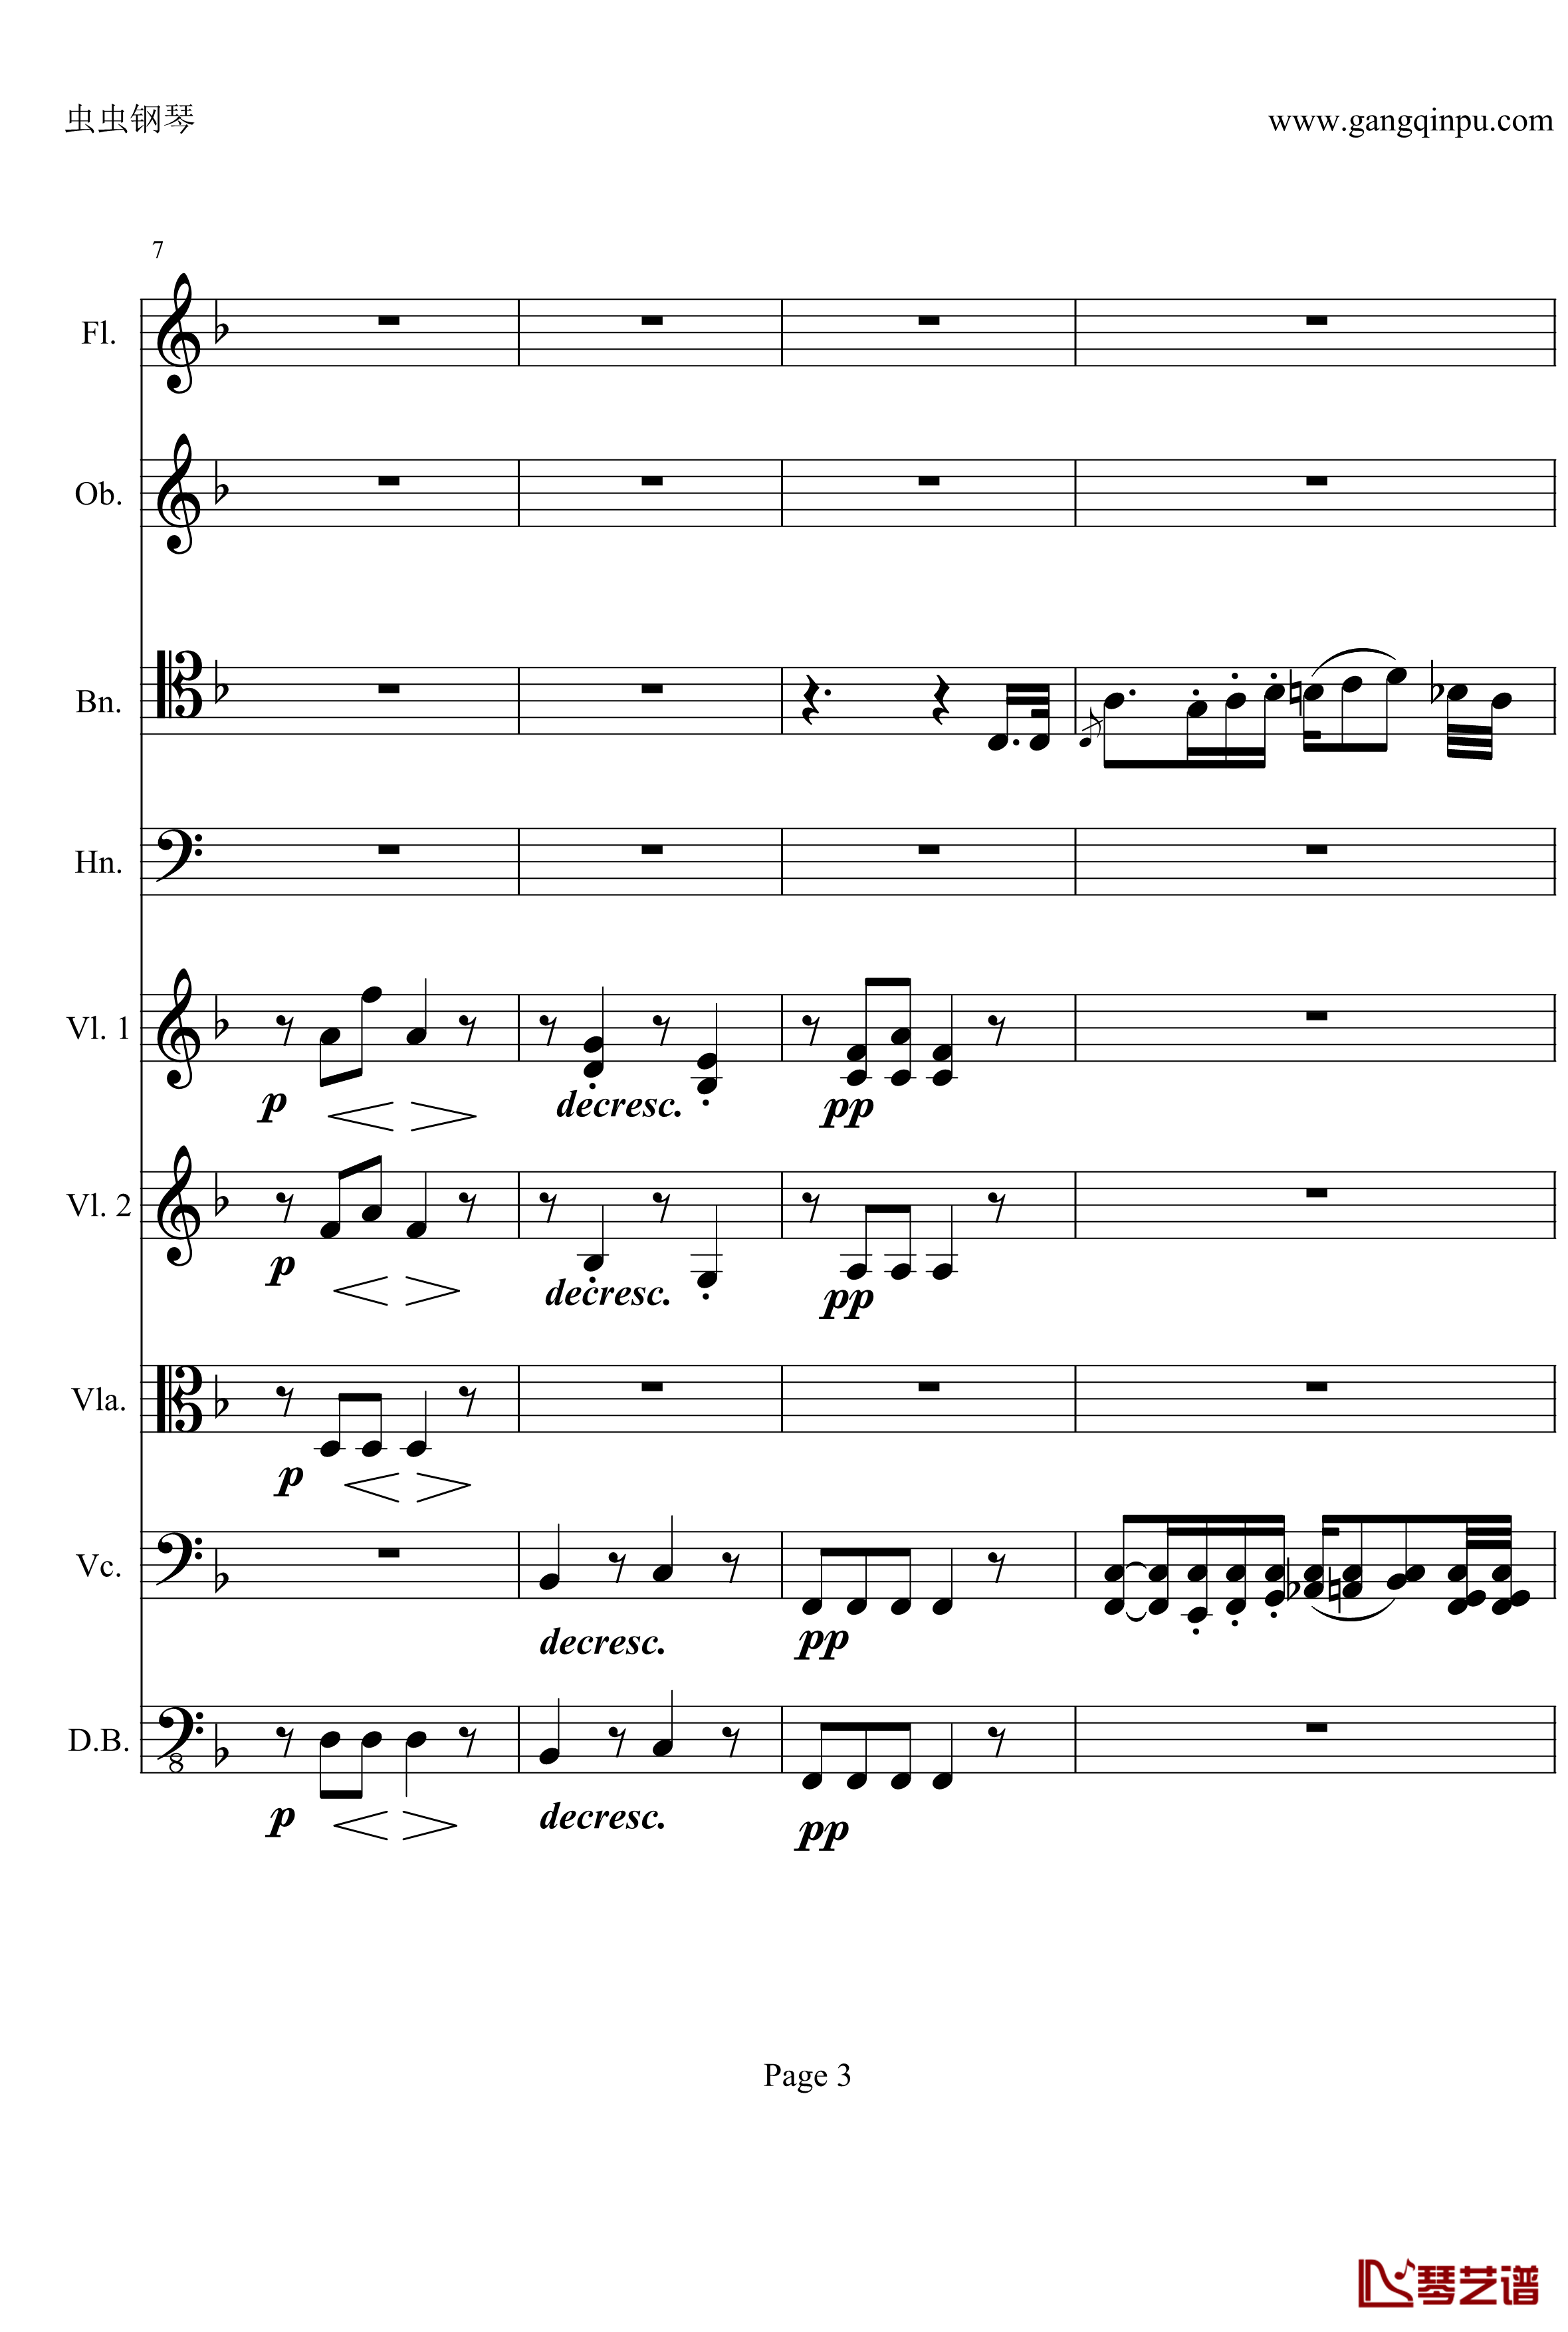 奏鸣曲之交响钢琴谱-第21-Ⅱ-贝多芬-beethoven3